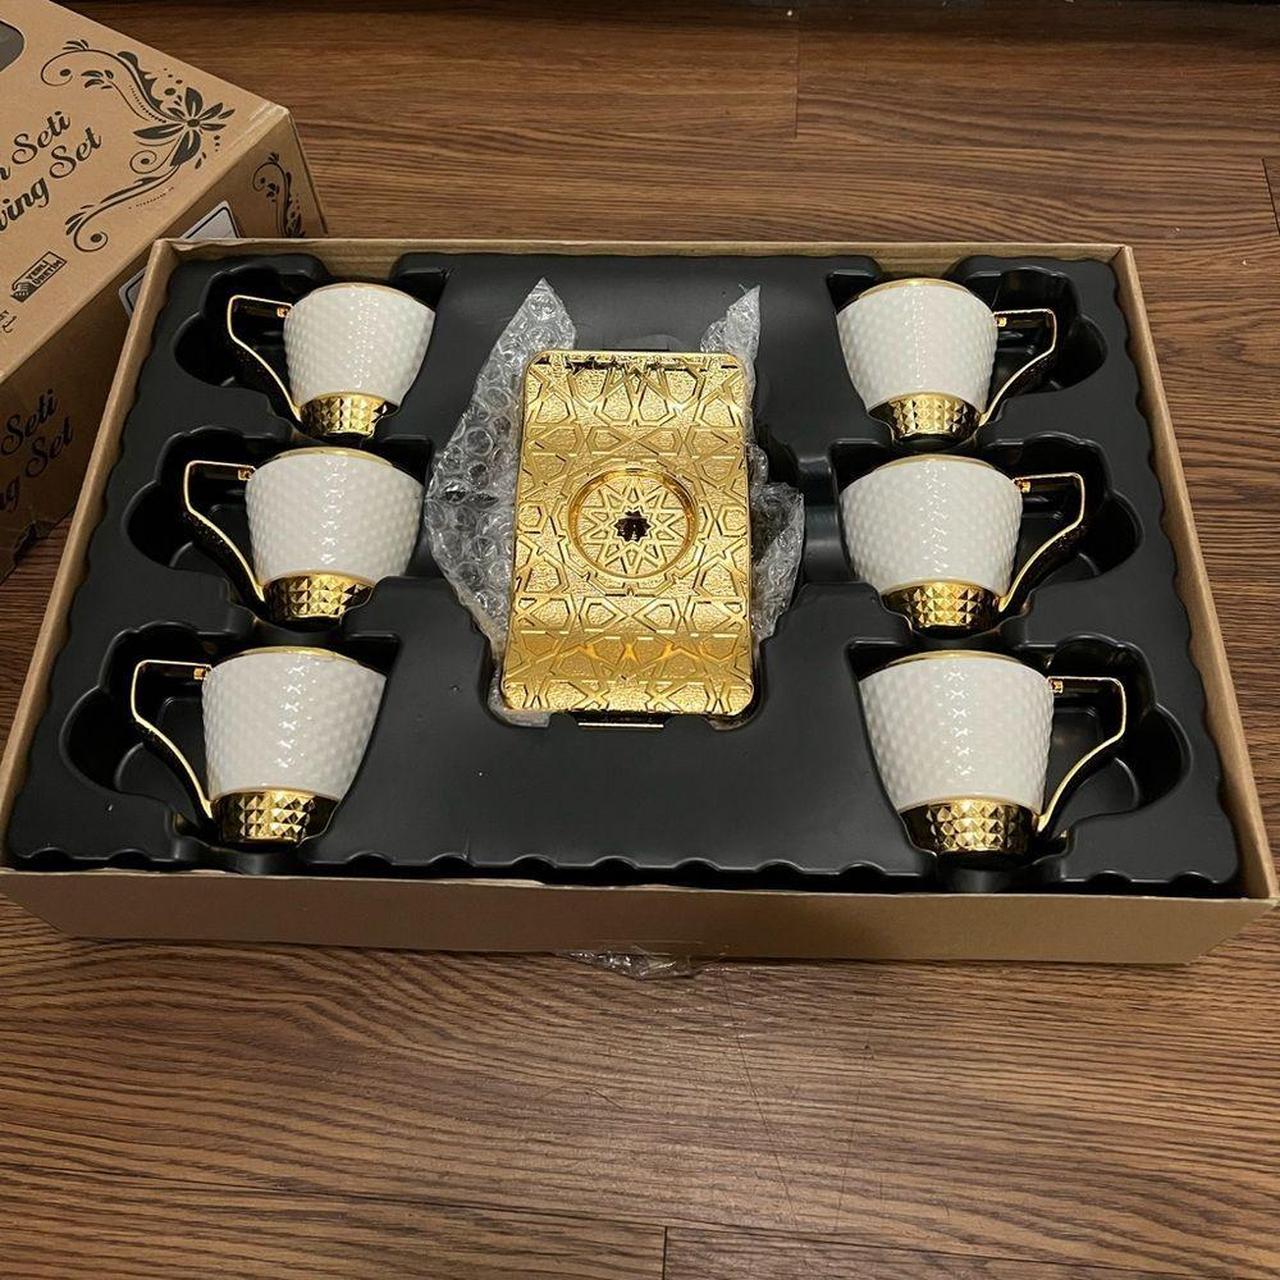 Demmex Stunning Espresso Turkish Coffee Cups With Depop